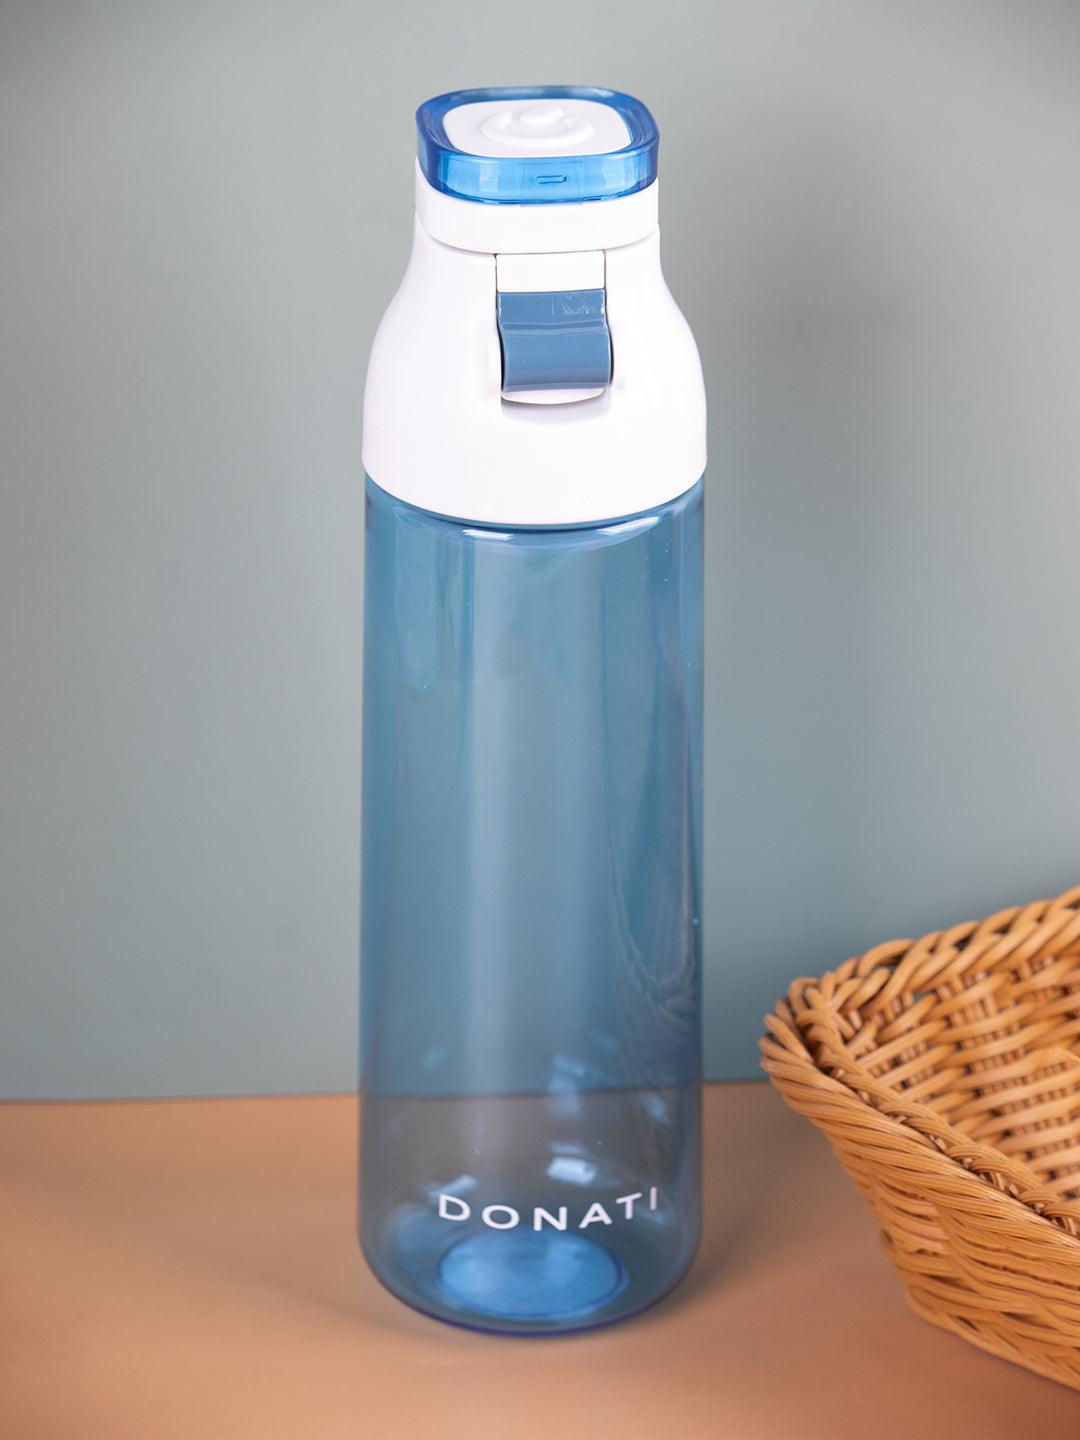 https://market99.com/cdn/shop/files/donati-bottle-water-bottle-light-blue-plastic-660-ml-bottle-660ml-1-29021364060330.jpg?v=1697007039&width=1080